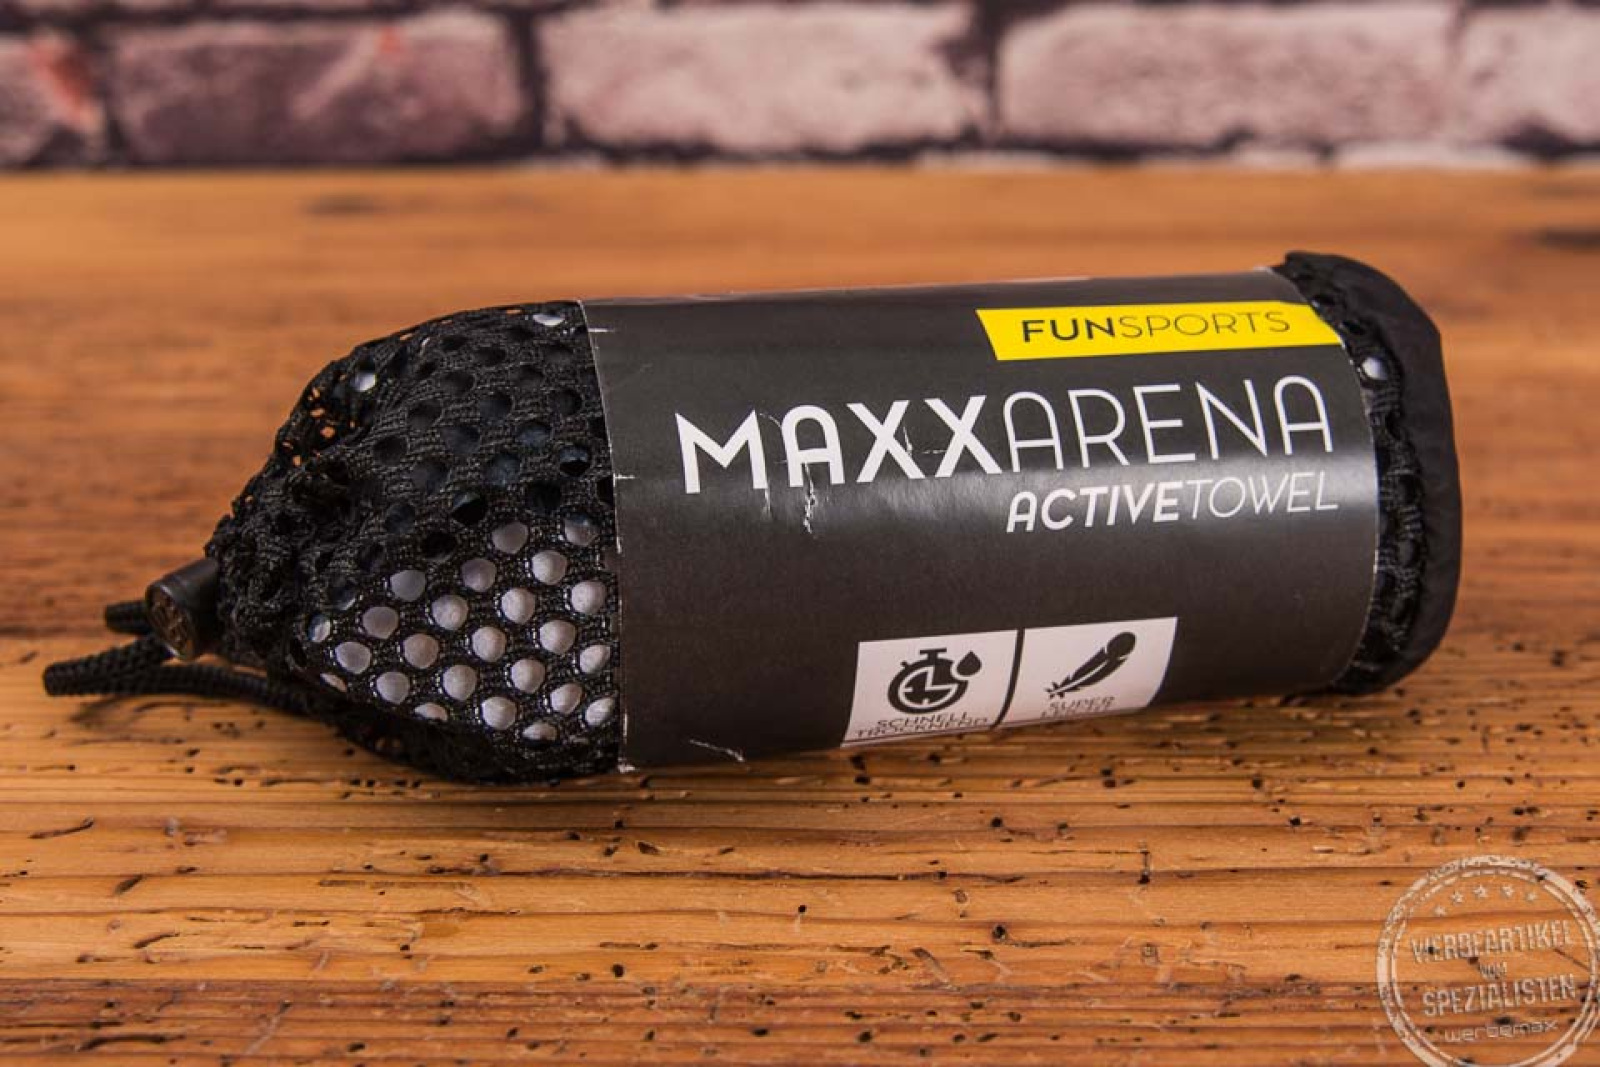 ActiveTowel Sporthandtuch in schwarzer Verpackung mit Aufdruck Maxx Arena als Werbeartikel.